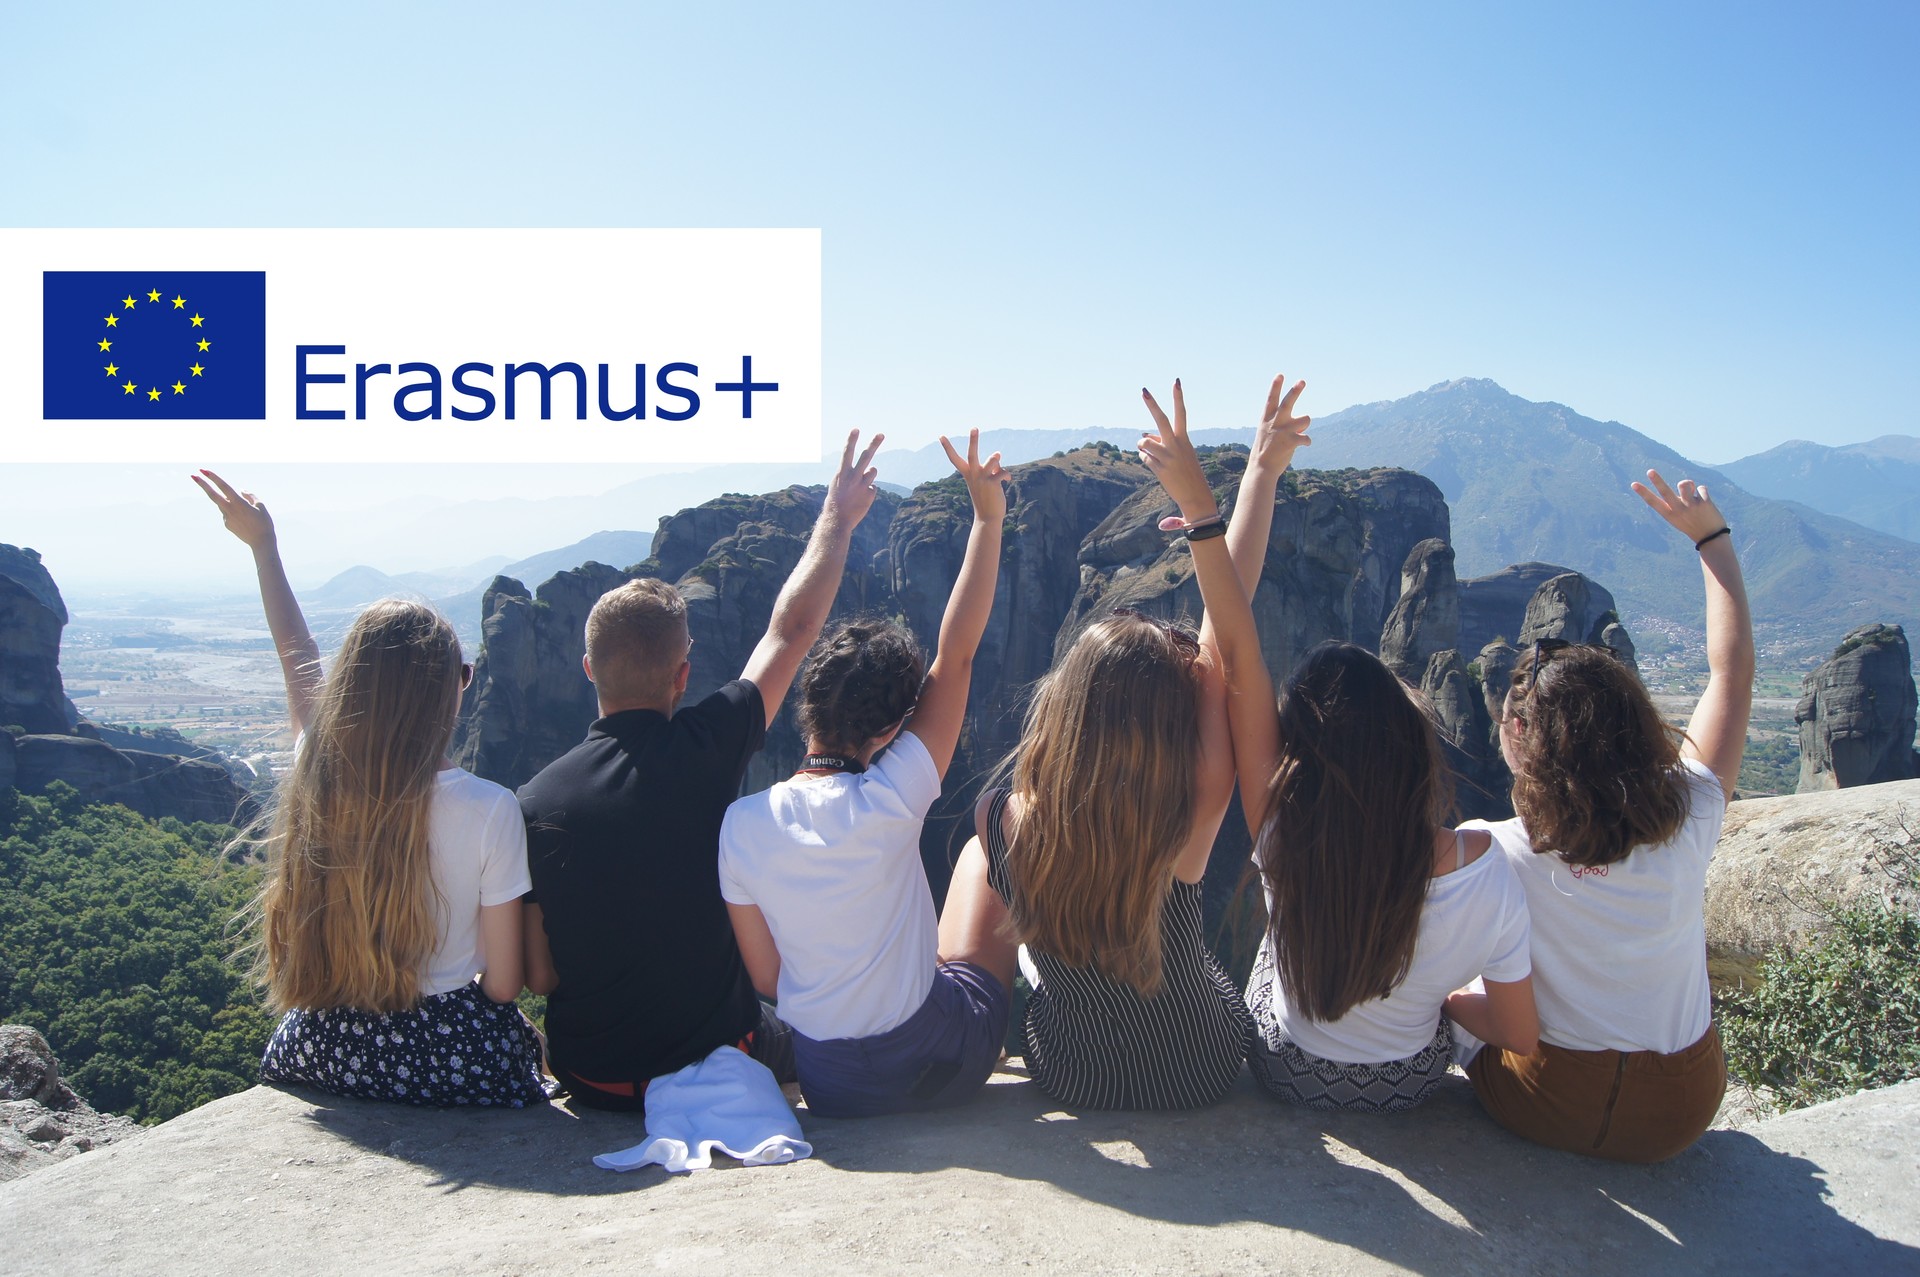 Na zdjęciu grupa osób na na tle górzystego terenu oraz logo Erasmus+